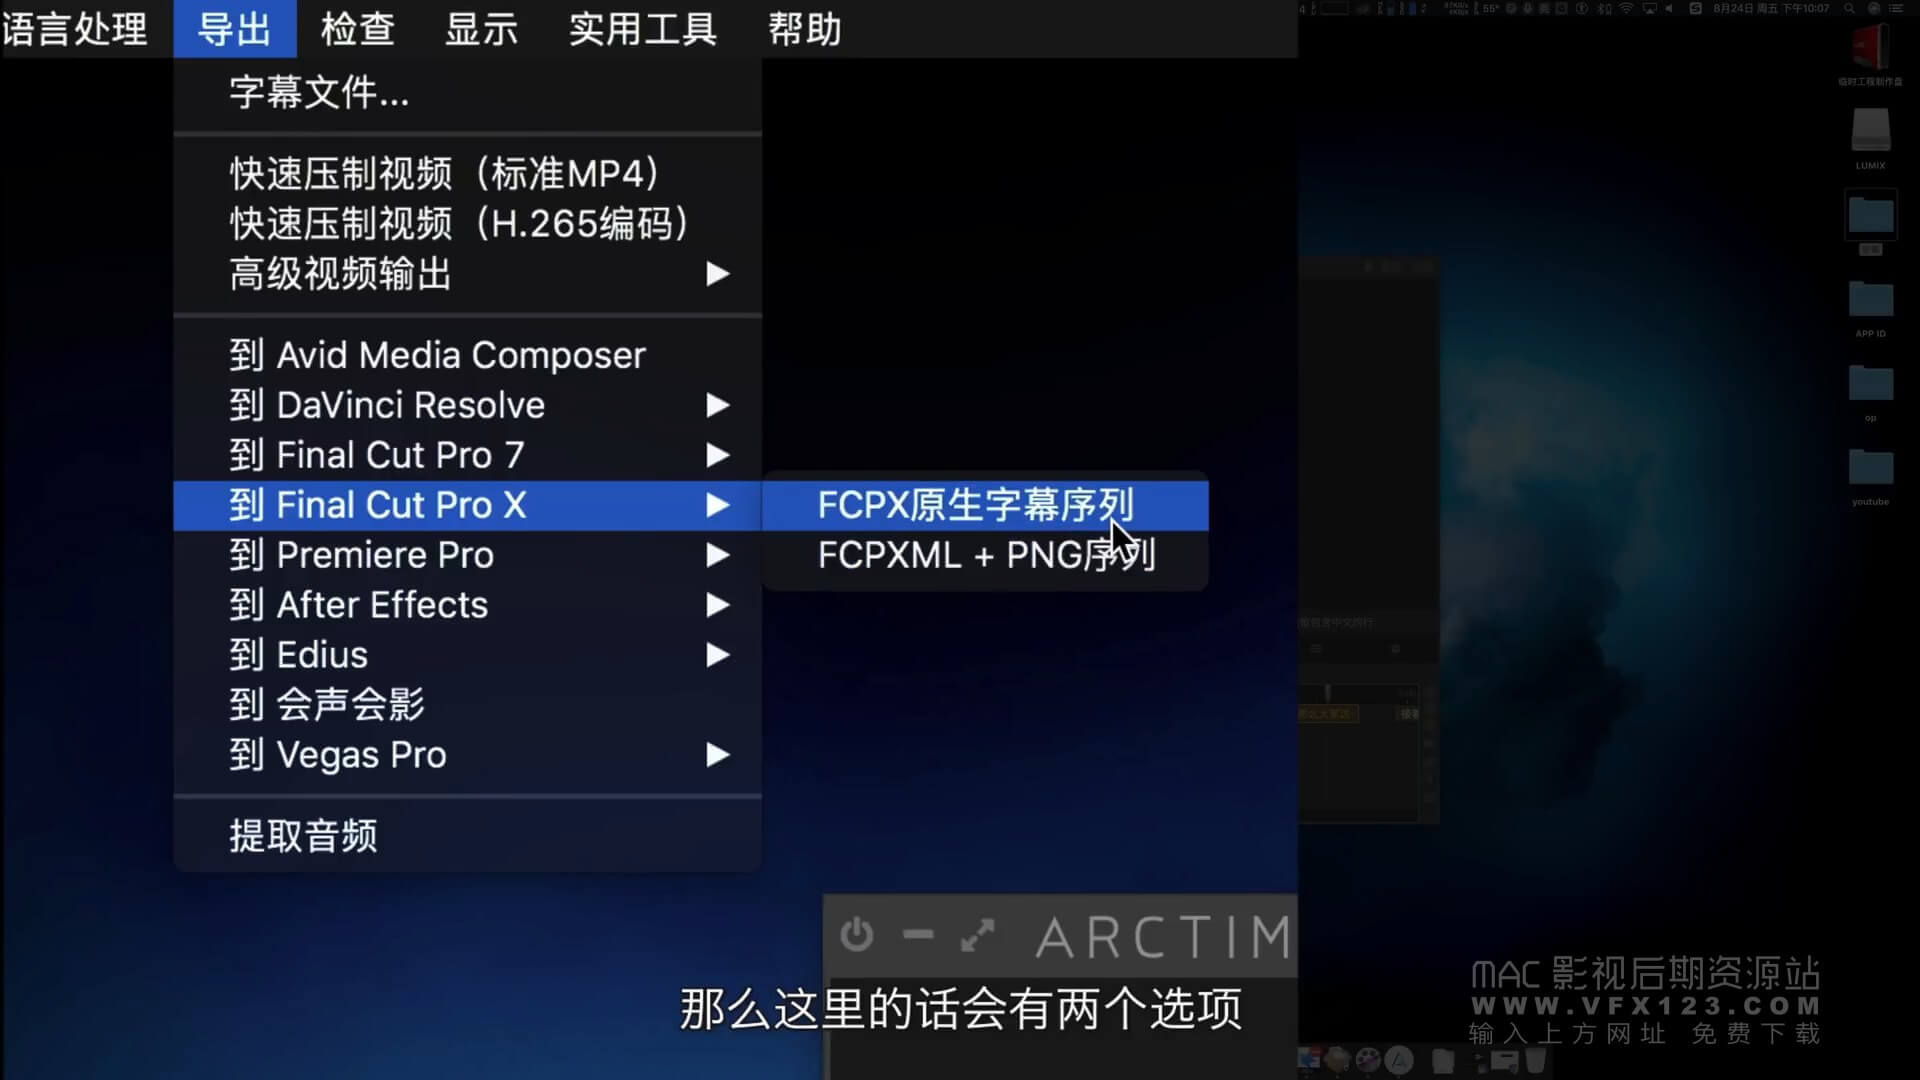 FCPX复古调色效果插件 ProVintage 30种调色预设